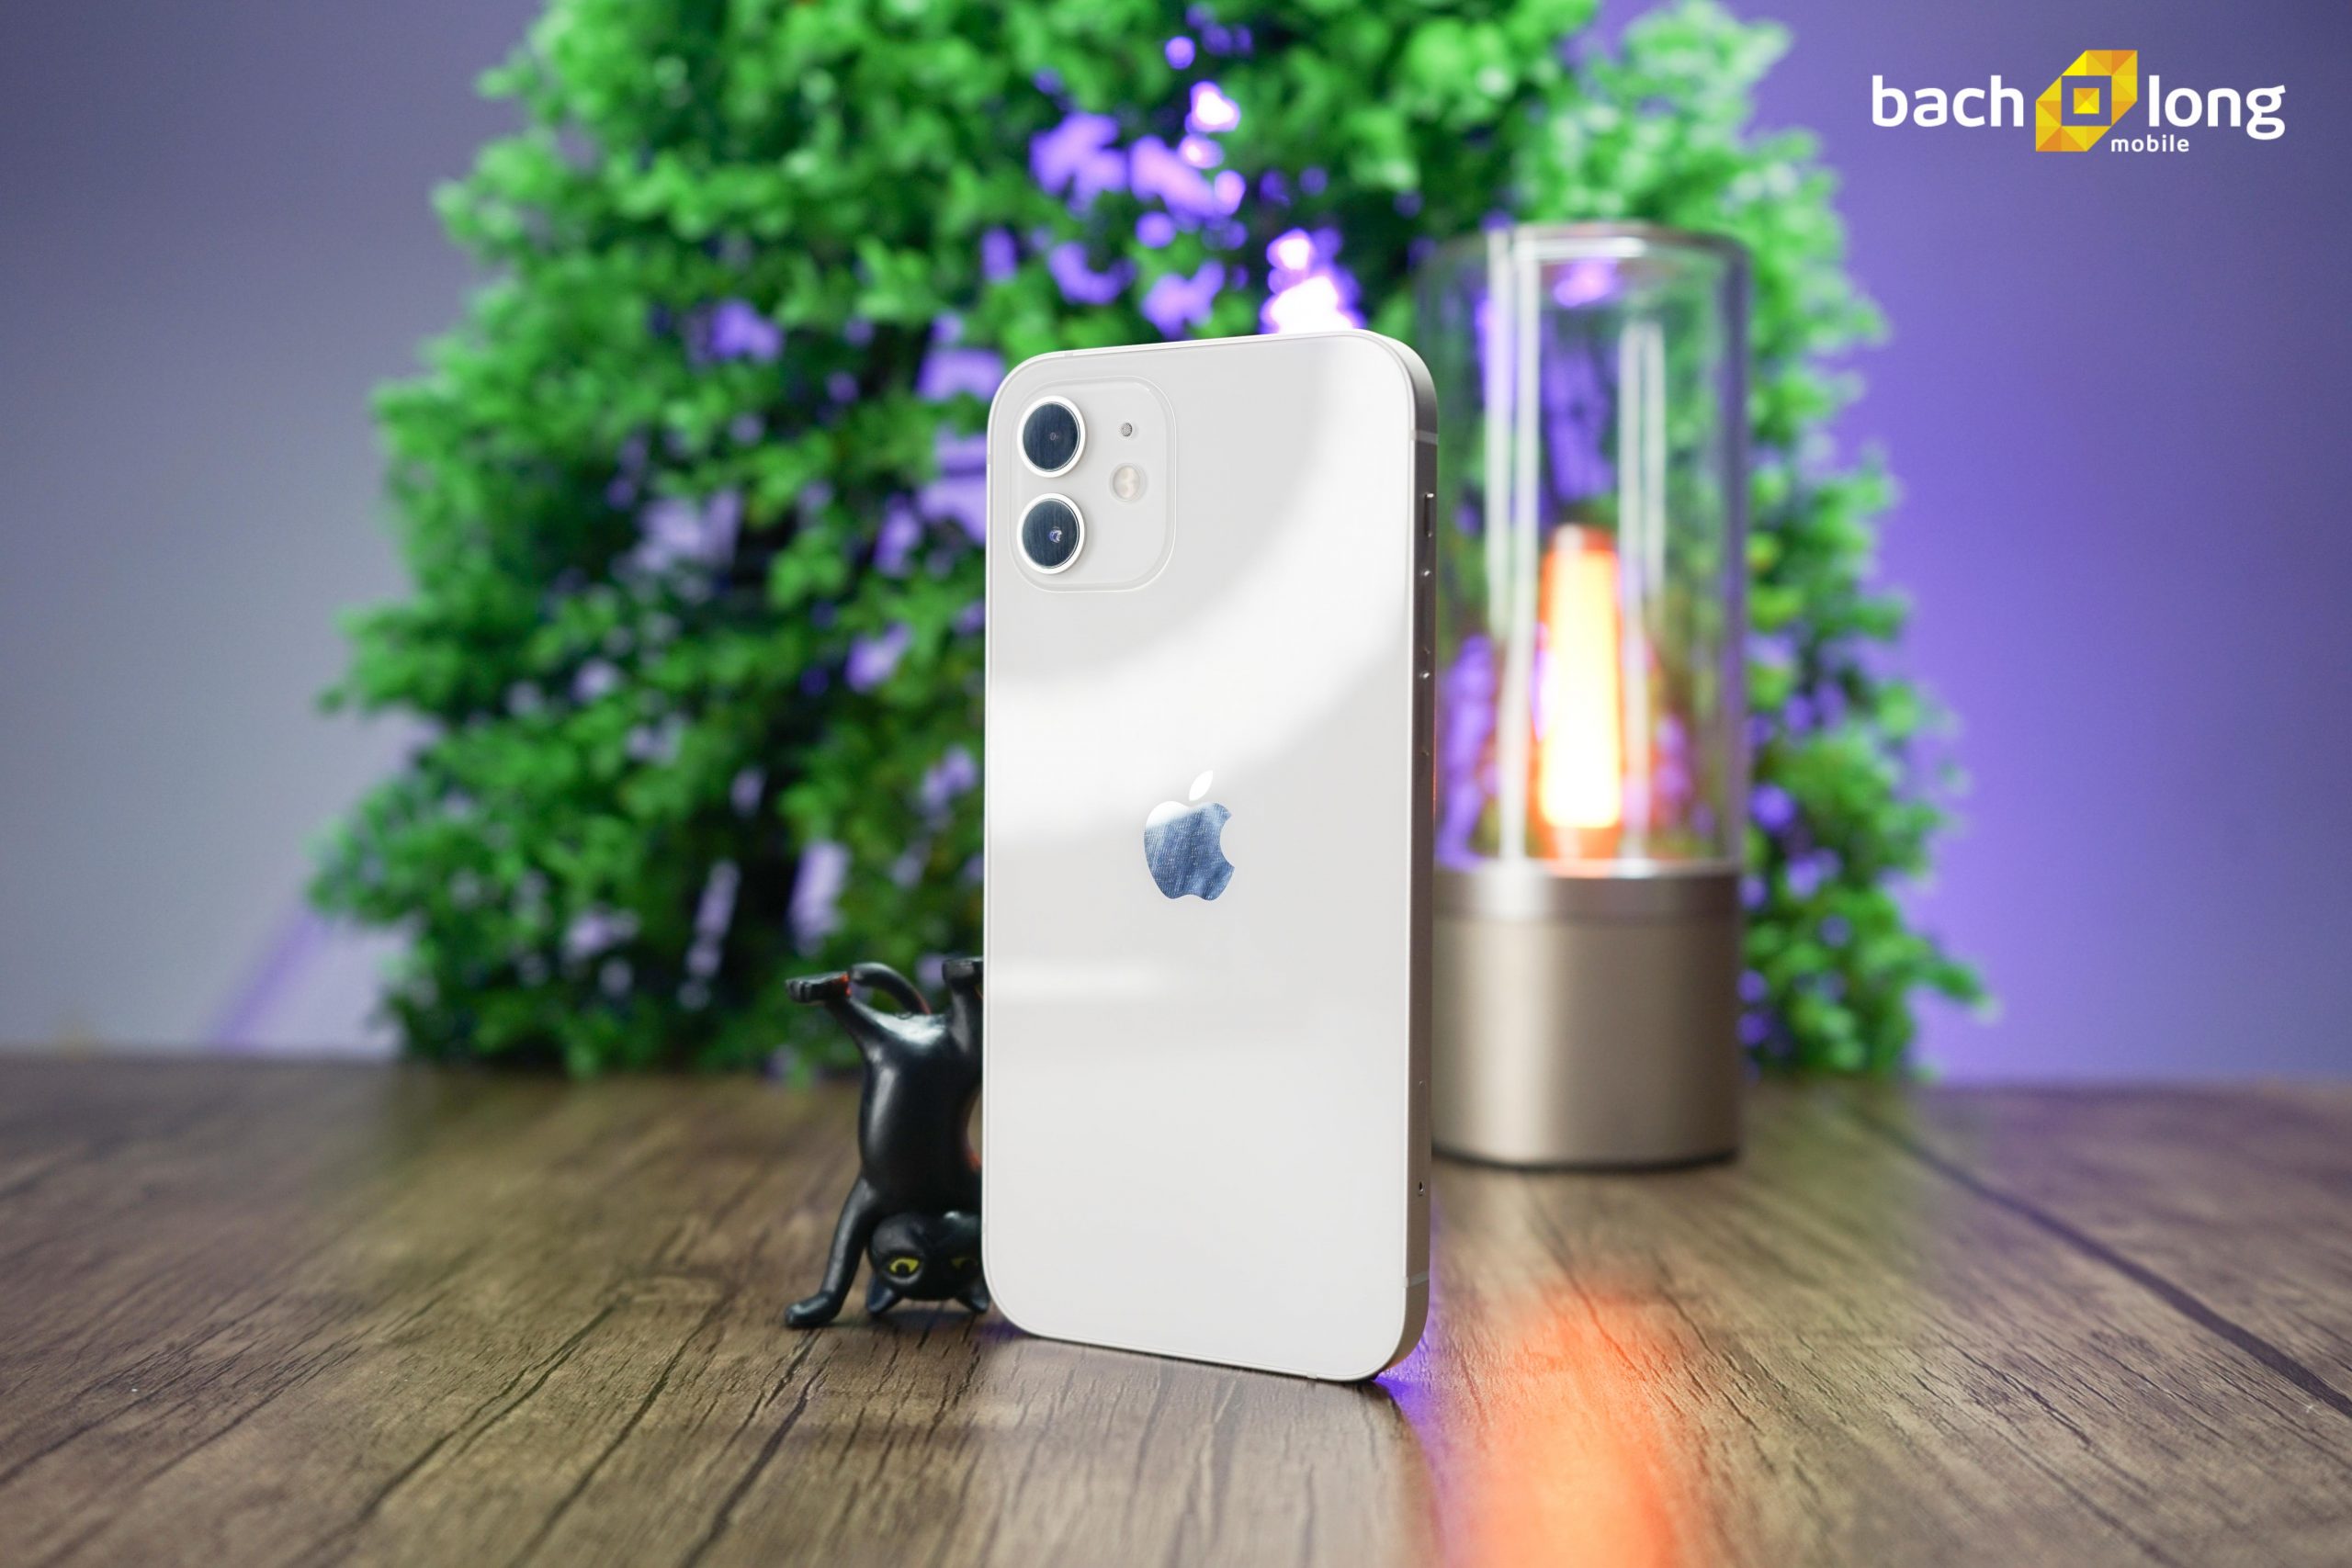 iPhone 12 màu trắng: Sự kết hợp hoàn hảo giữa truyền thống và hiện đại, iPhone 12 màu trắng sẽ làm cho bạn không thể không yêu nó. Màn hình Super Retina XDR cỡ 6.1 inch, camera đa năng và chip A14 Bionic là những điểm nhấn của sản phẩm này. Hãy xem hình ảnh để cảm nhận vẻ đẹp độc đáo của nó.